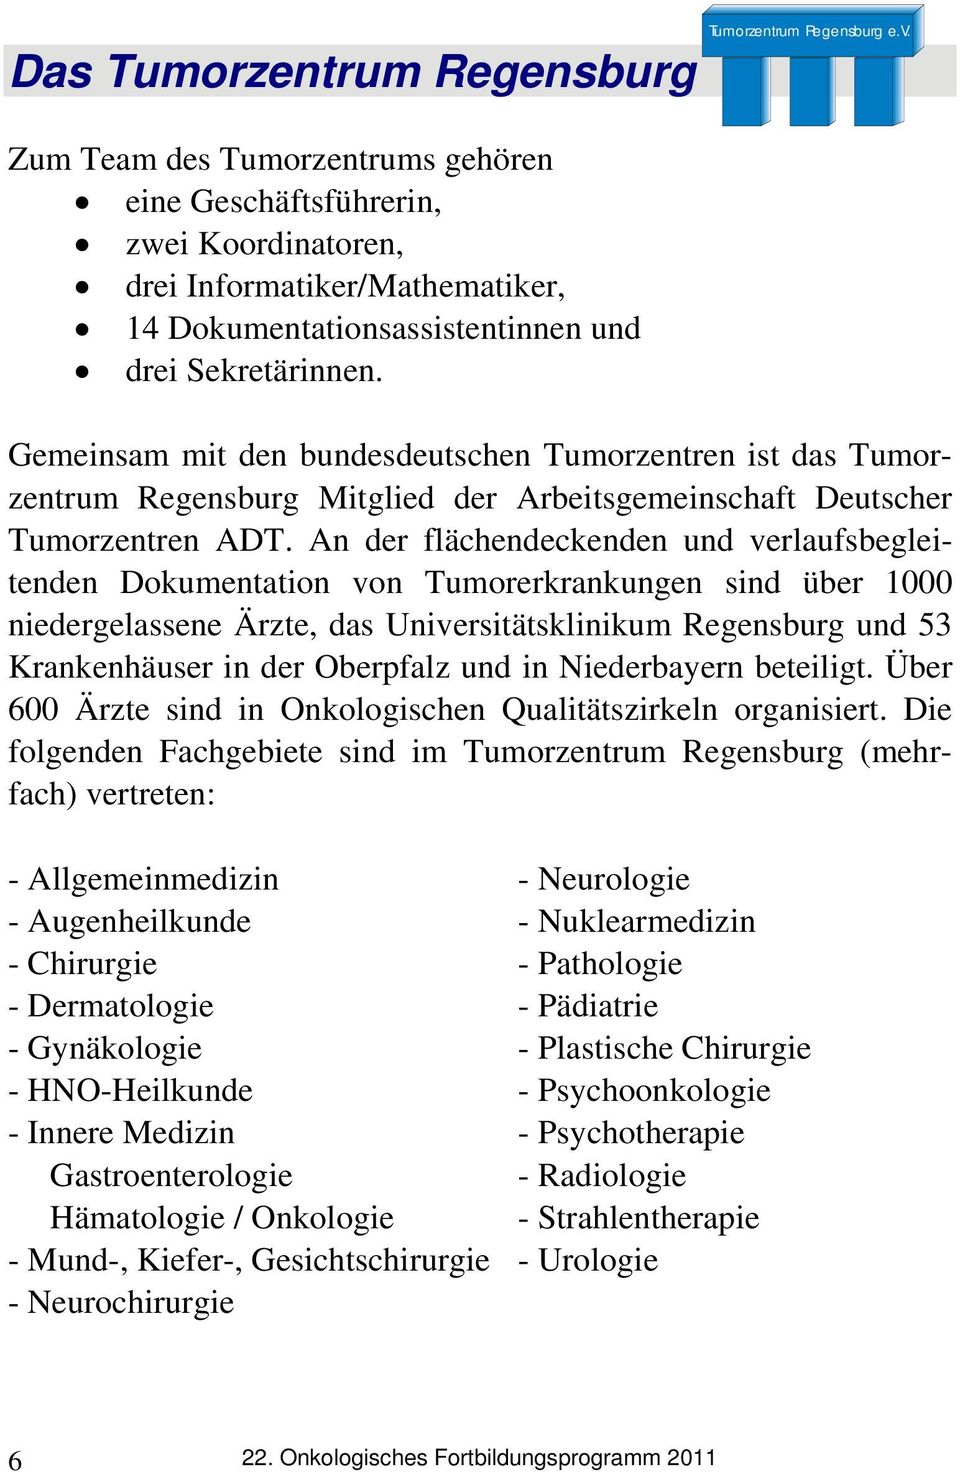 An der flächendeckenden und verlaufsbegleitenden Dokumentation von Tumorerkrankungen sind über 1000 niedergelassene Ärzte, das Universitätsklinikum Regensburg und 53 Krankenhäuser in der Oberpfalz